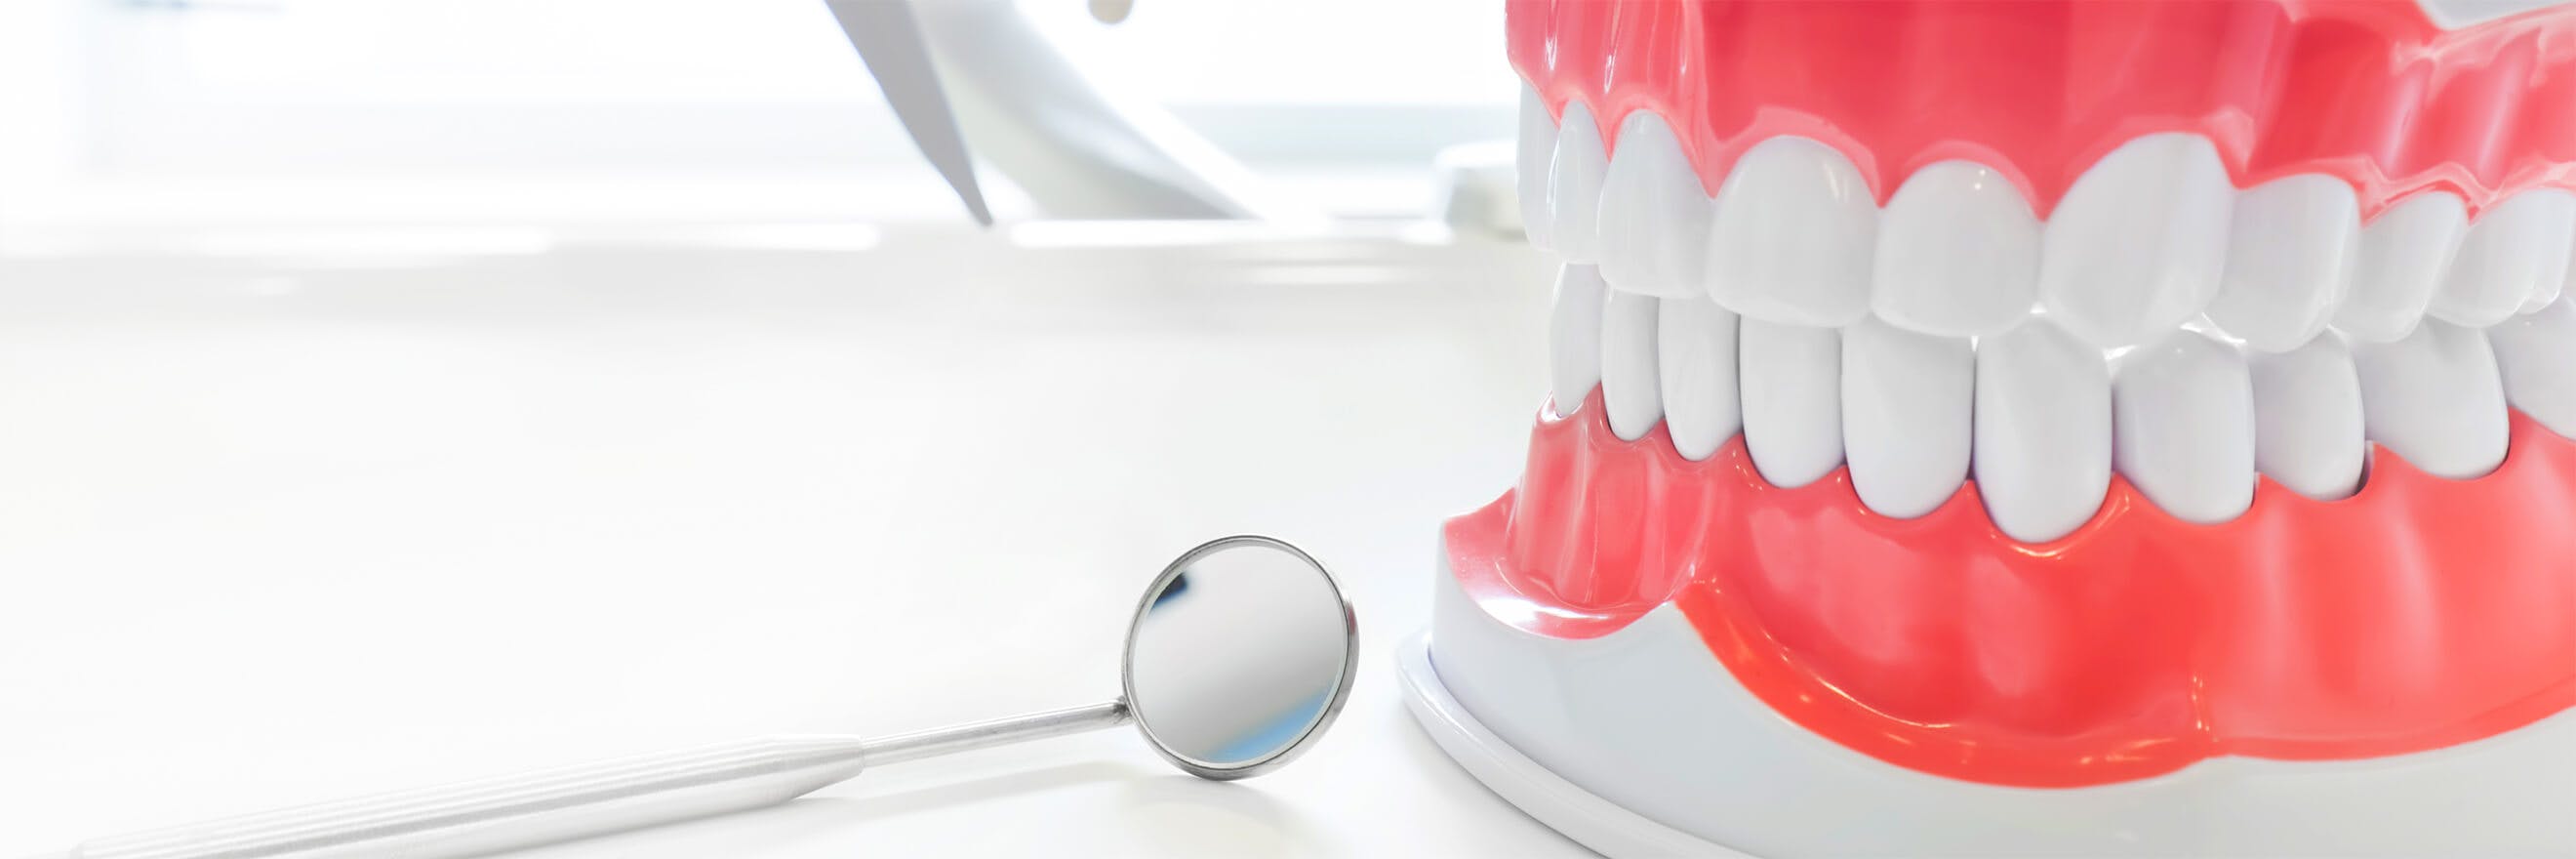 Modelo de dentadura completa con un espejo bucal del dentista